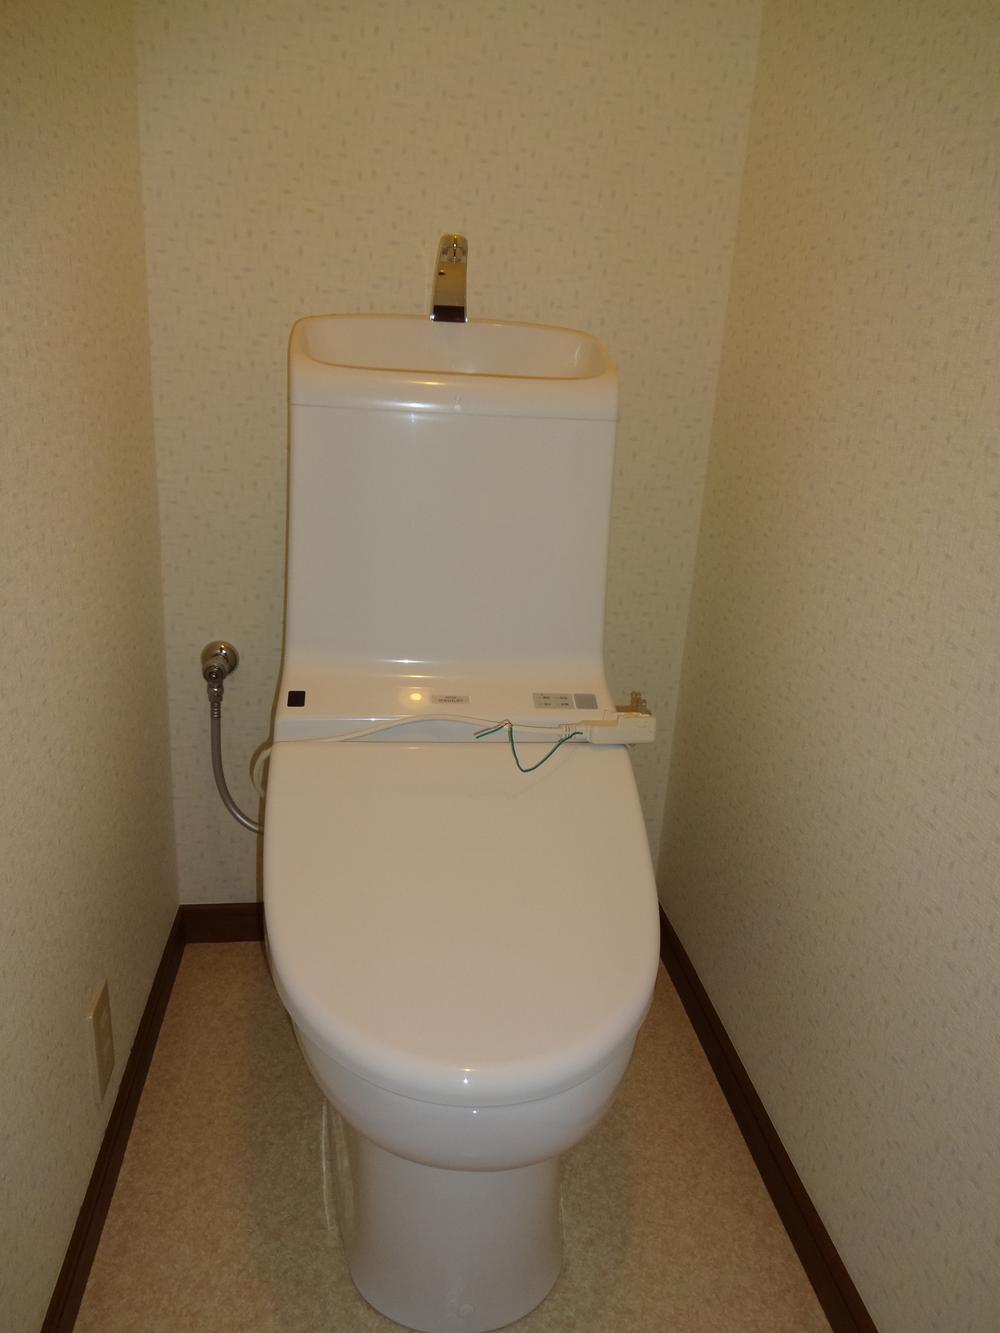 Toilet. First floor toilet (October 2013) Shooting